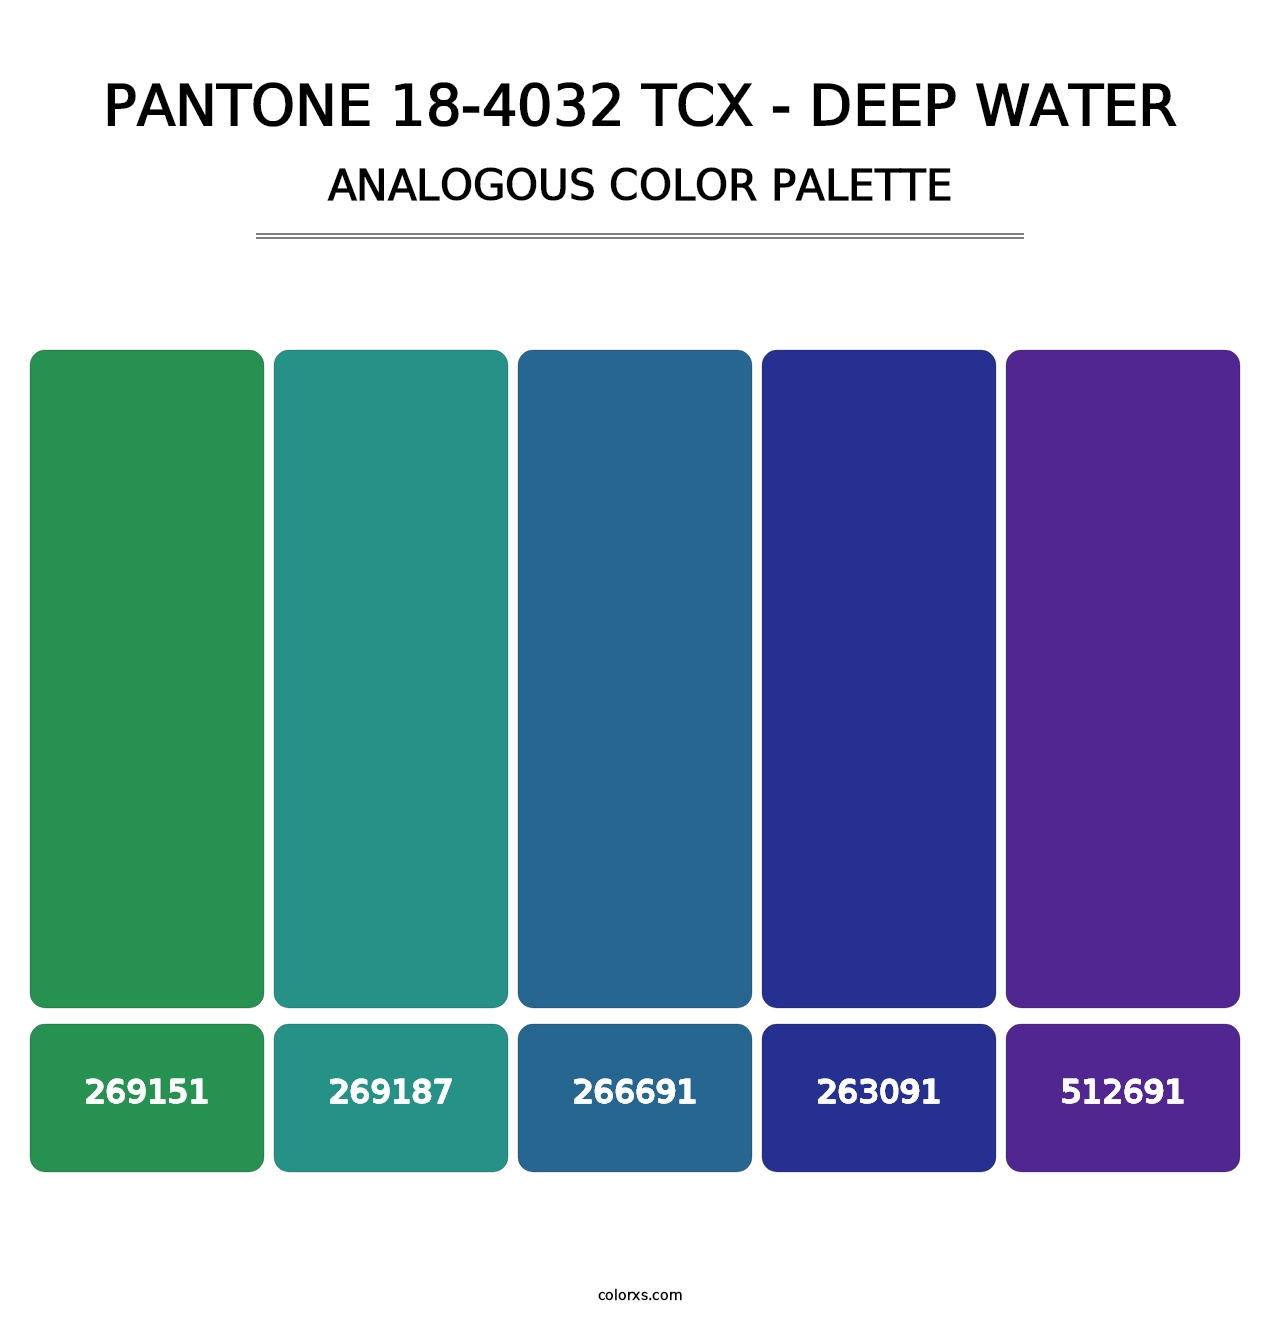 PANTONE 18-4032 TCX - Deep Water - Analogous Color Palette